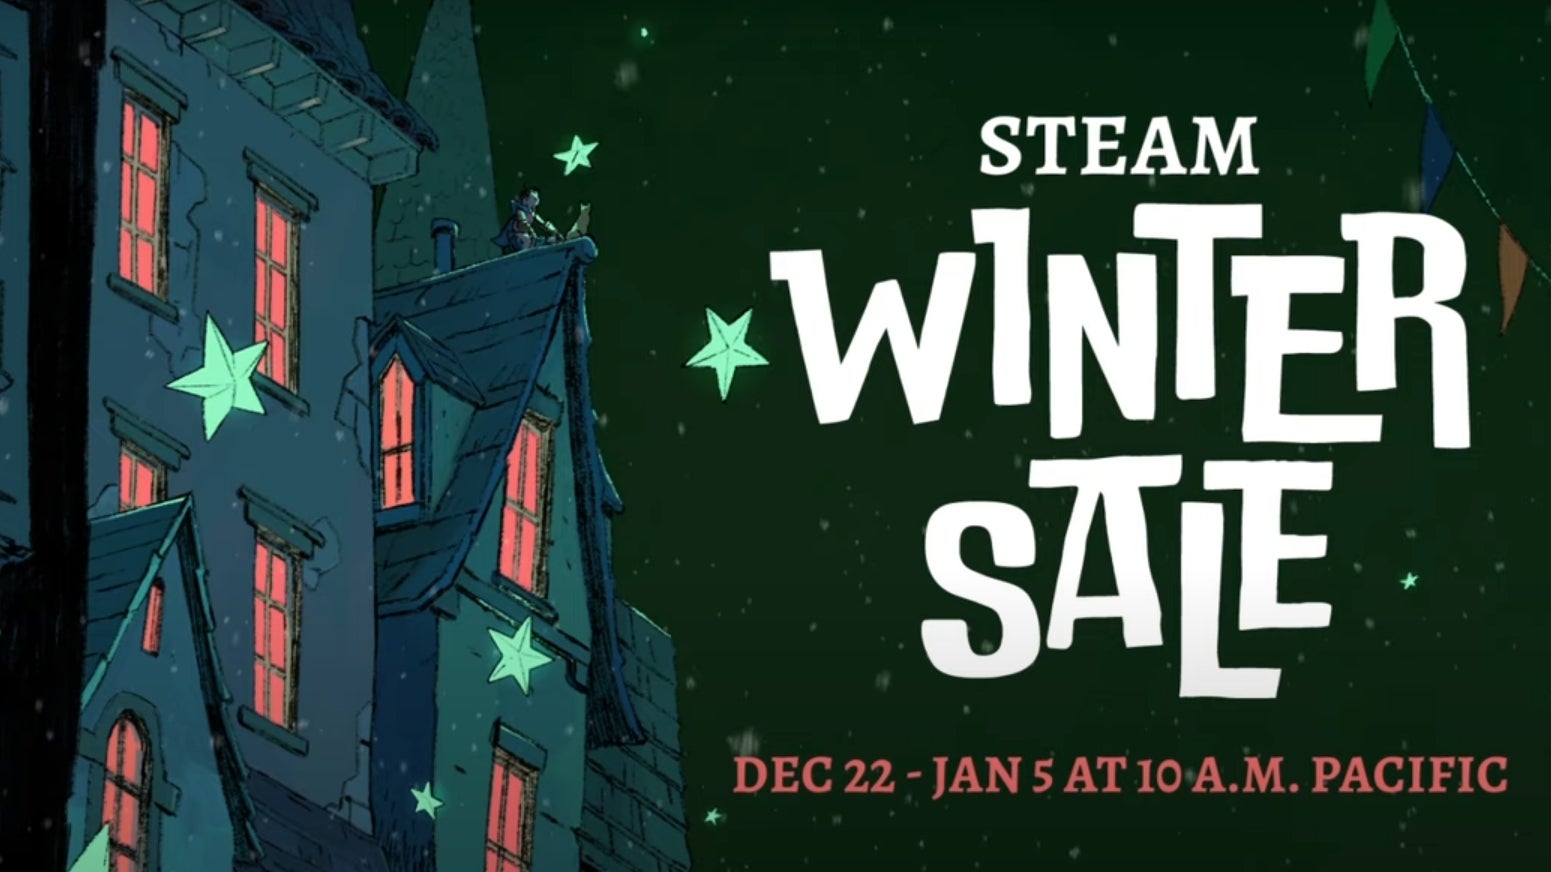 Macht euch bereit, der Steam Winter Sale beginnt am 22. Dezember